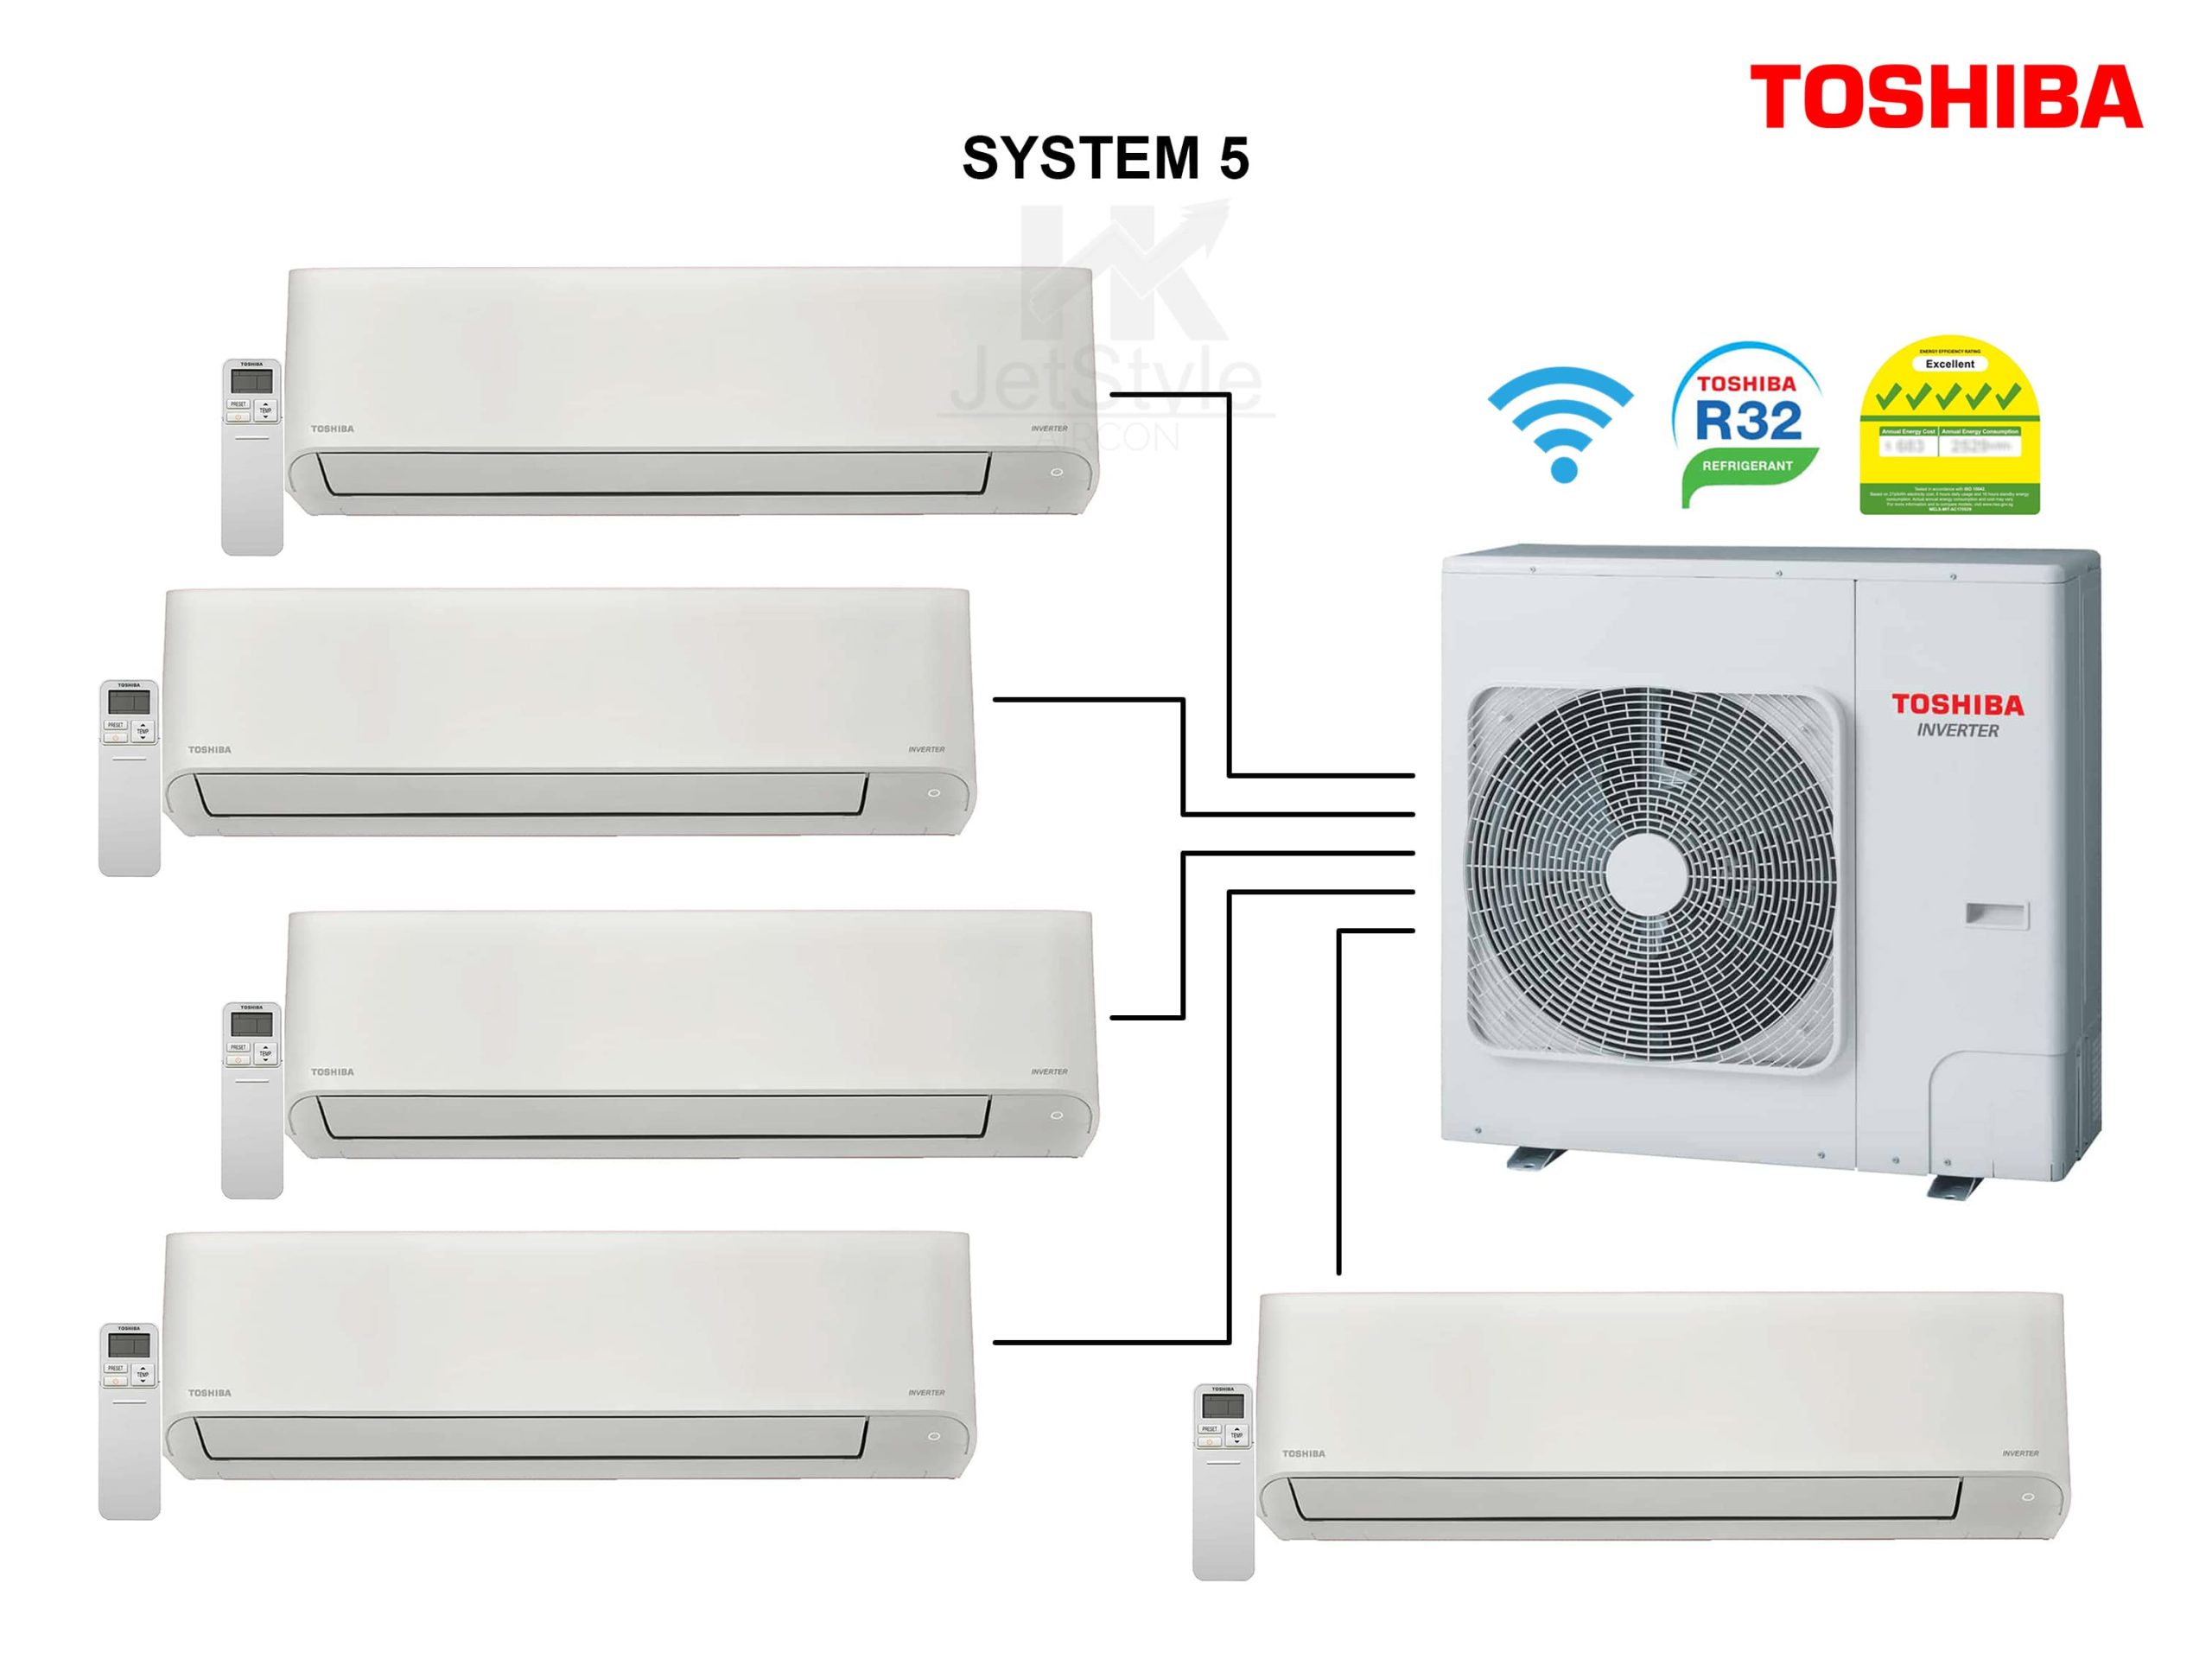 Toshiba System 5